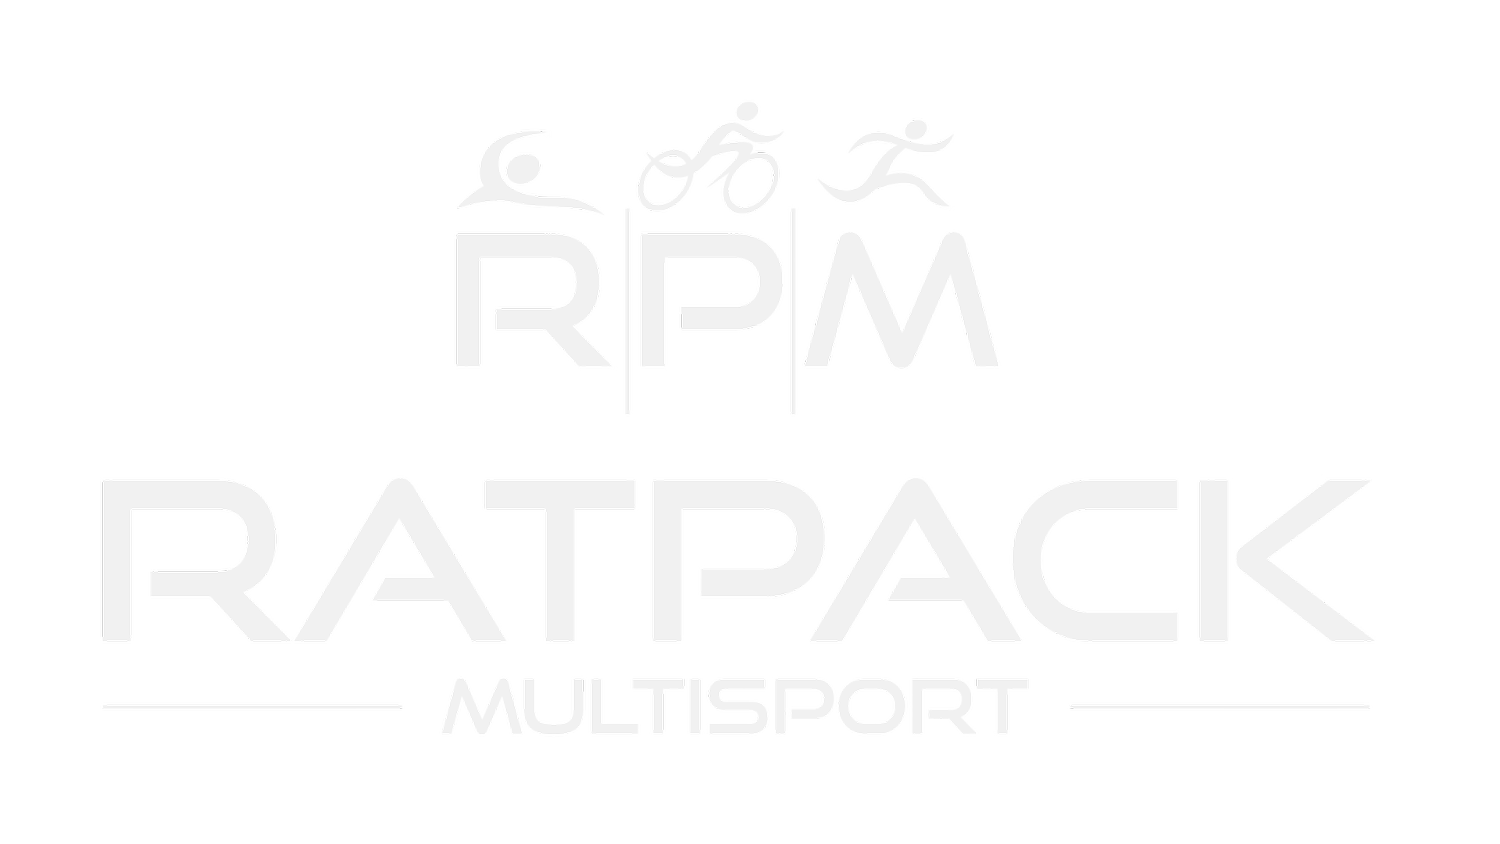 RATPACK Multisport